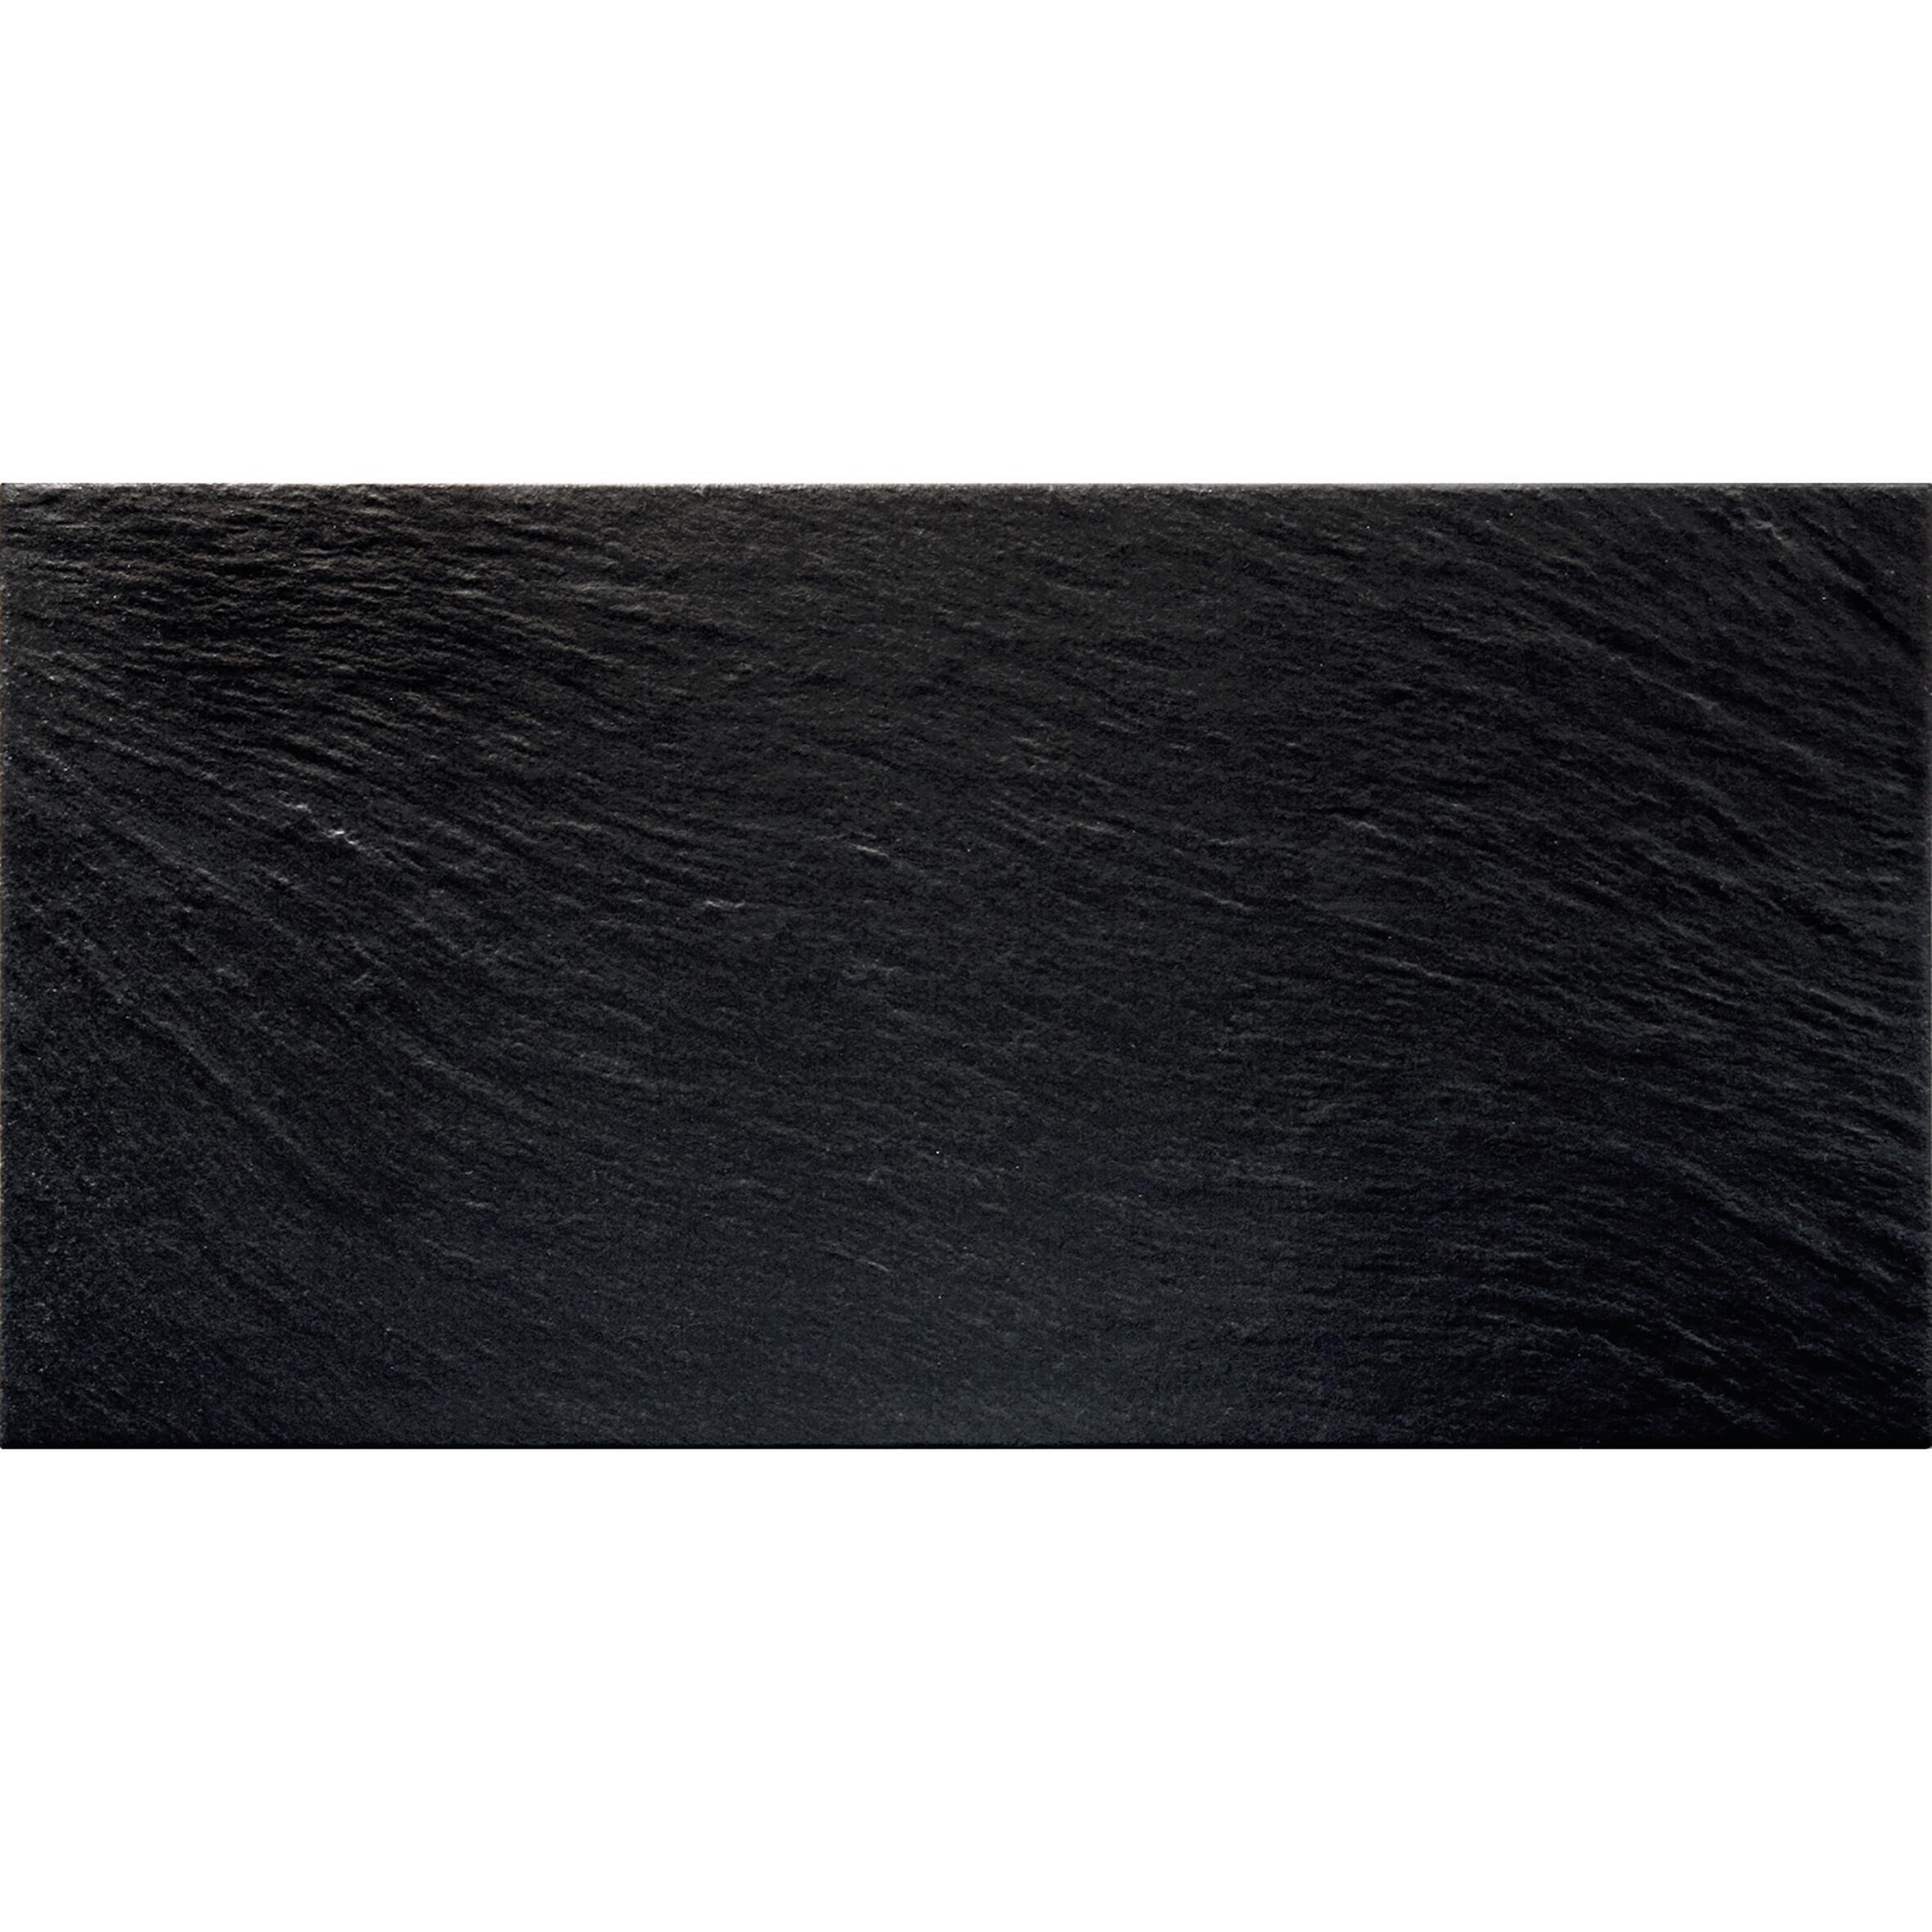 Piastrella da pavimento Vesuvio 30 x 60.4 cm sp. 9 mm PEI 4/5 nero - 2